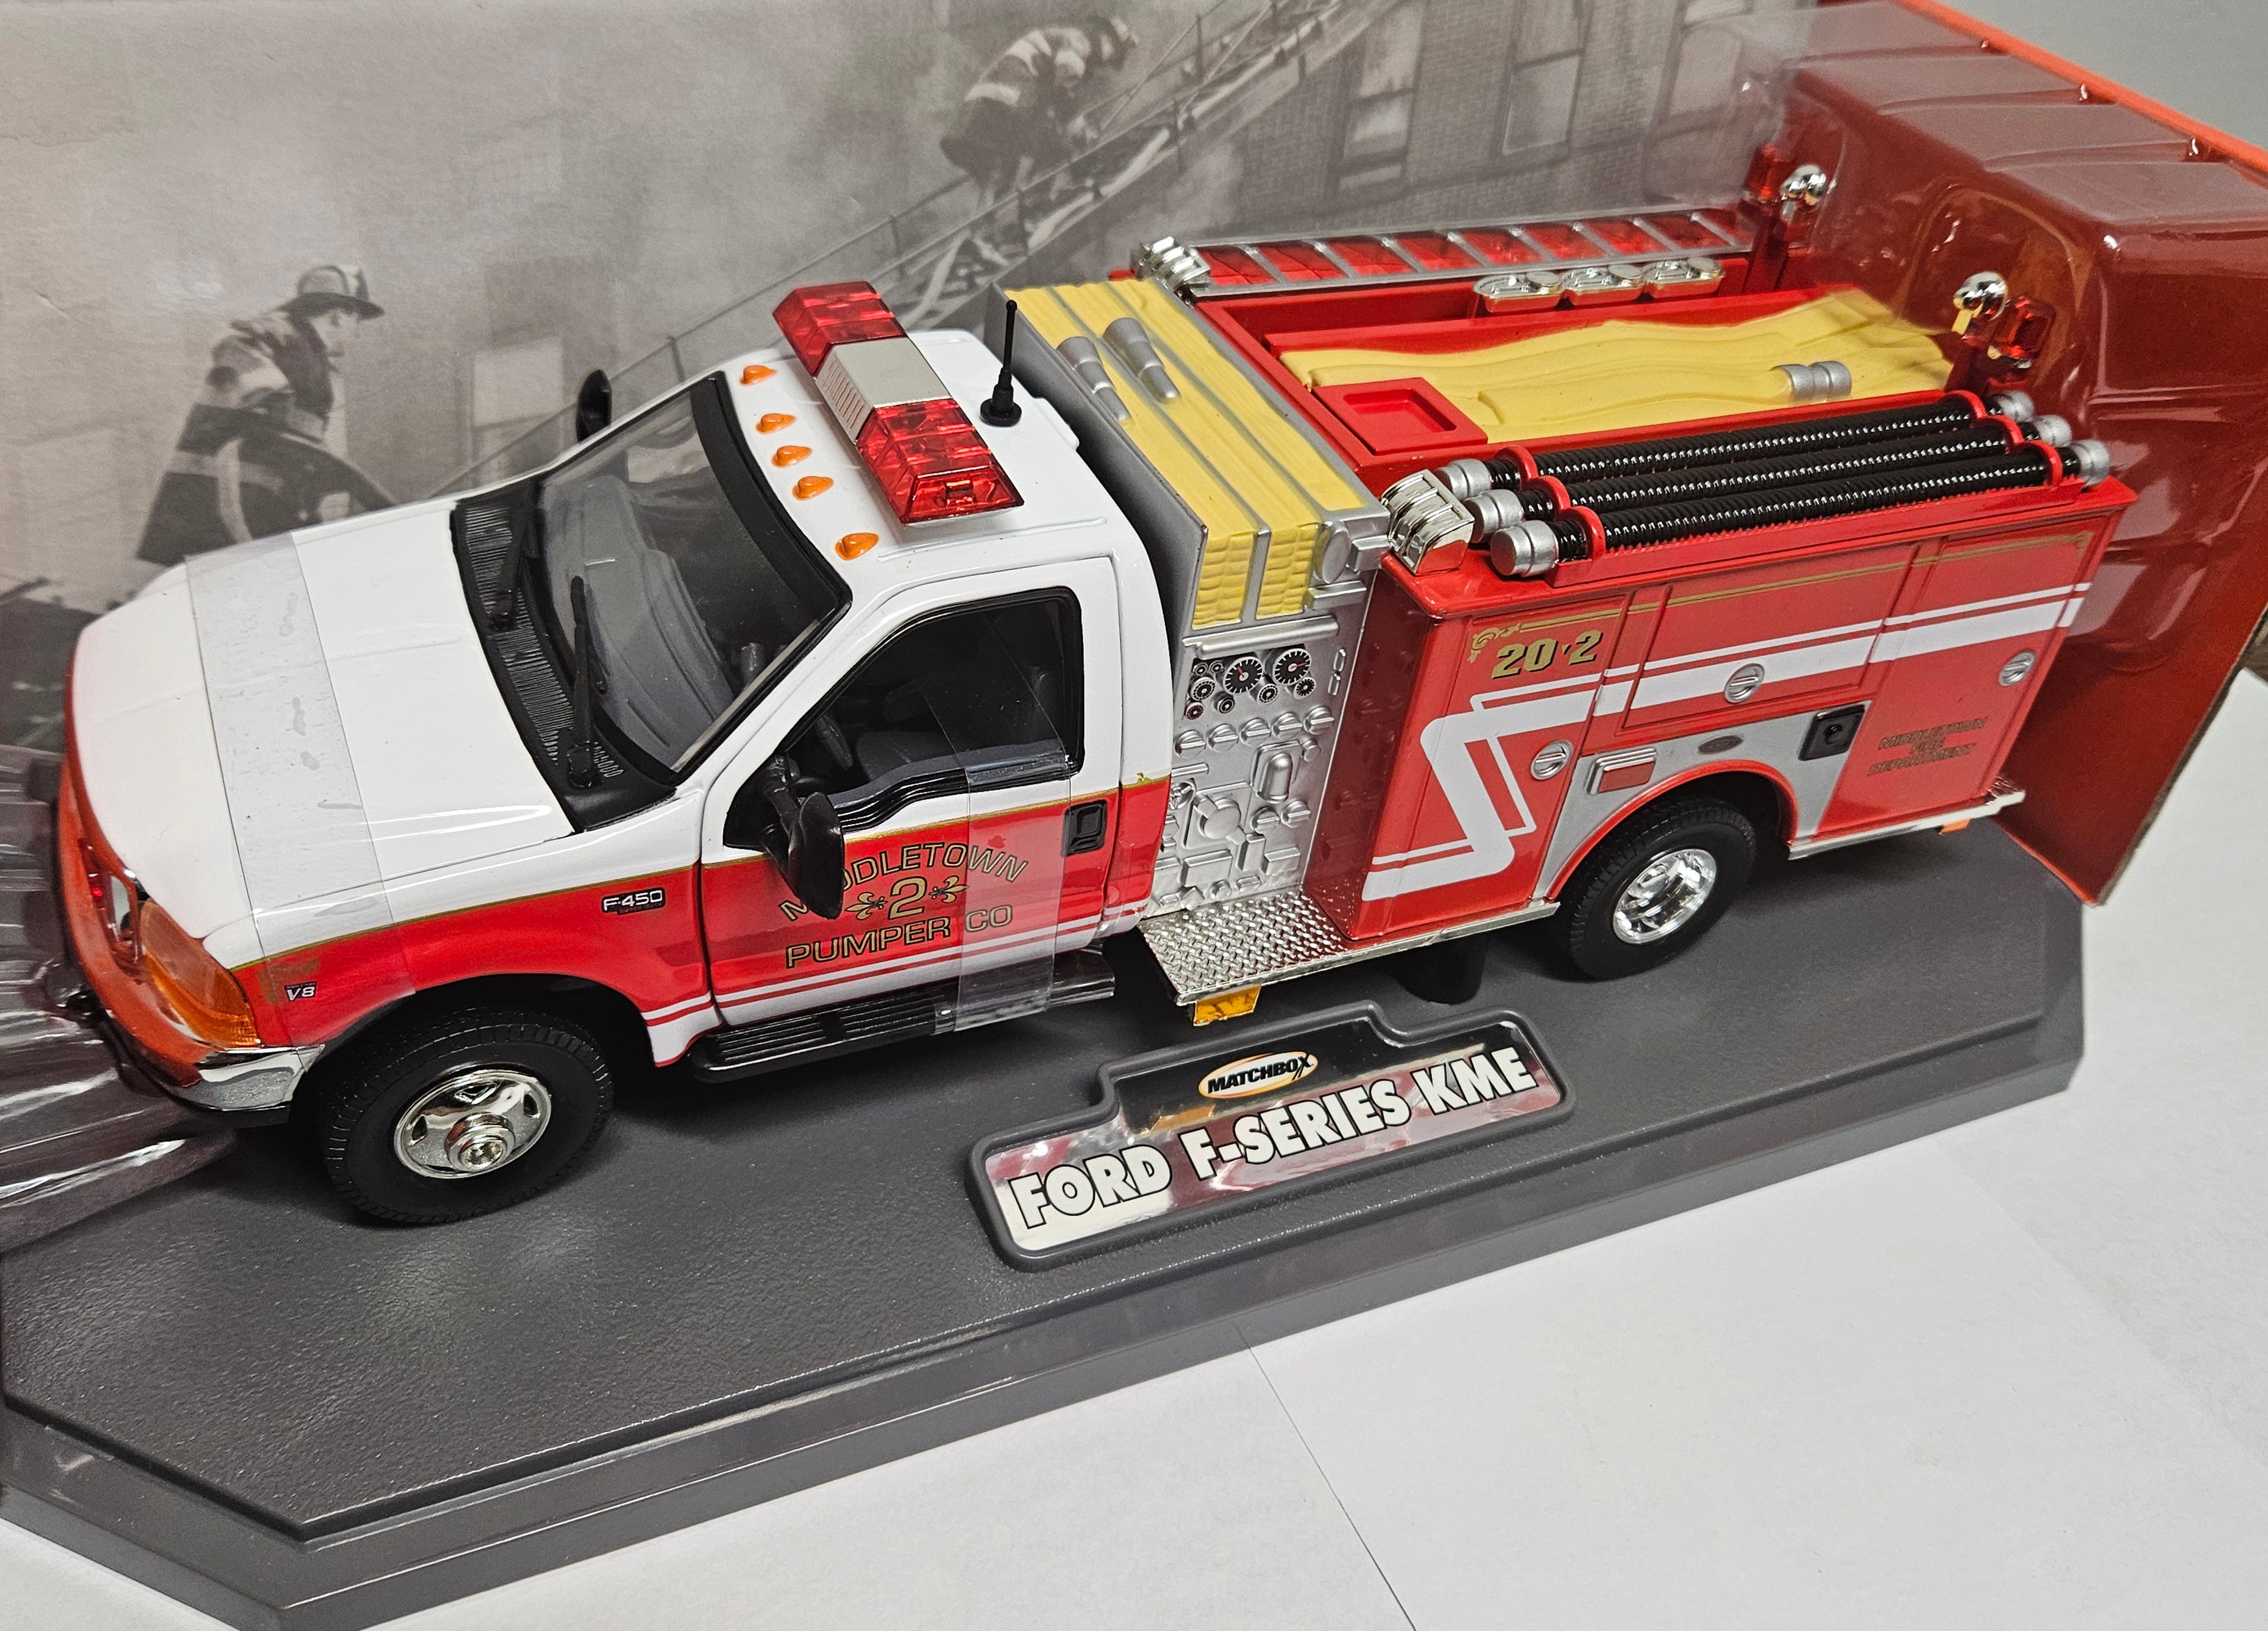 Fire Truck-Camion Pompier-Ford F-Series KME (Échelle-Scale 1:24)